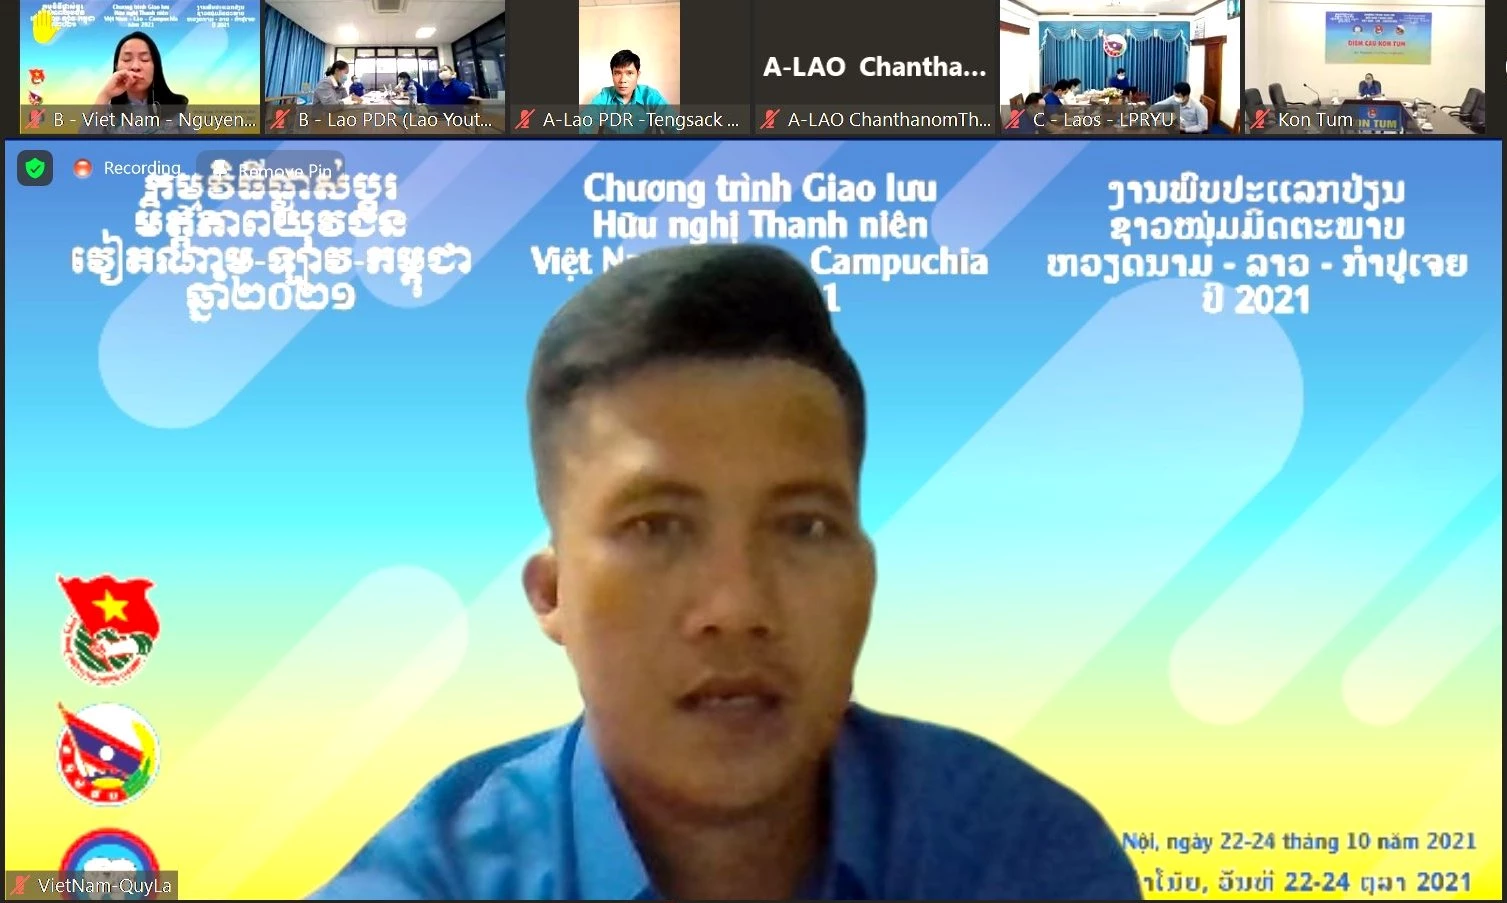 Tại Giao lưu hữu nghị thanh niên 3 nước, anh Thạch Quy La chia sẻ thanh niên Việt Nam - Lào - Campuchia cần trở thành lực lượng nòng cốt, cùng hệ thống chính trị thực hiện hiệu quả mục tiêu kép